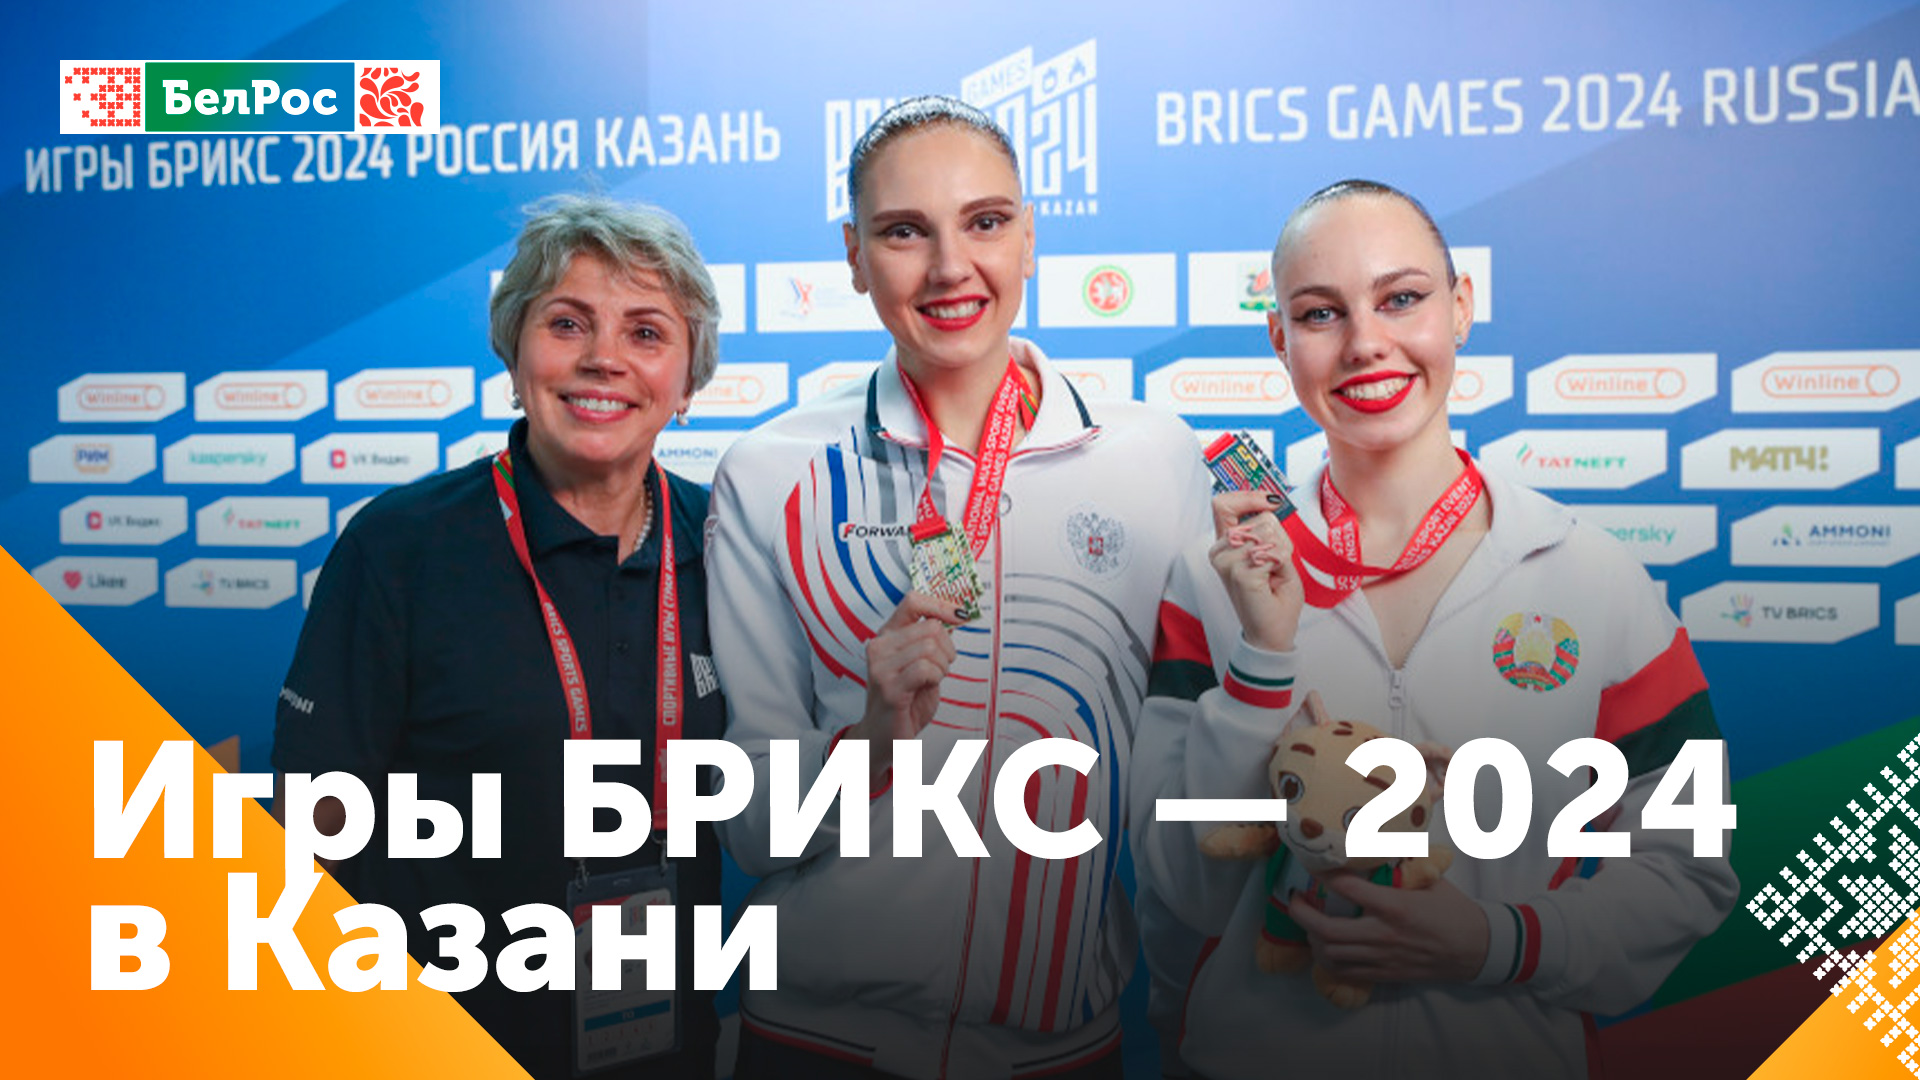 Синхронистка из России принесла первое золото на Играх БРИКС, участница из Беларуси стала второй